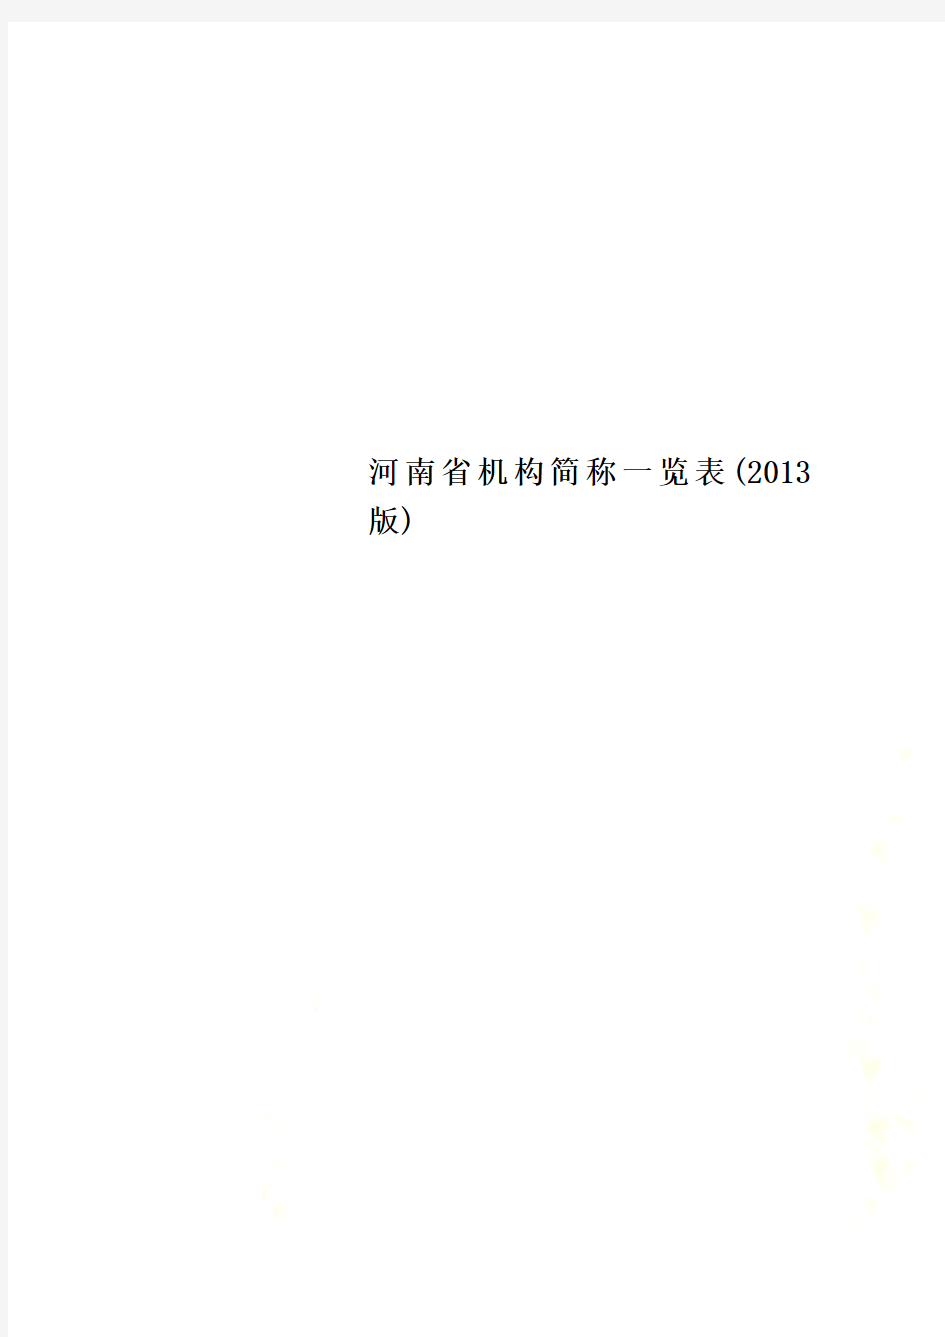 河南省机构简称一览表(2013版)